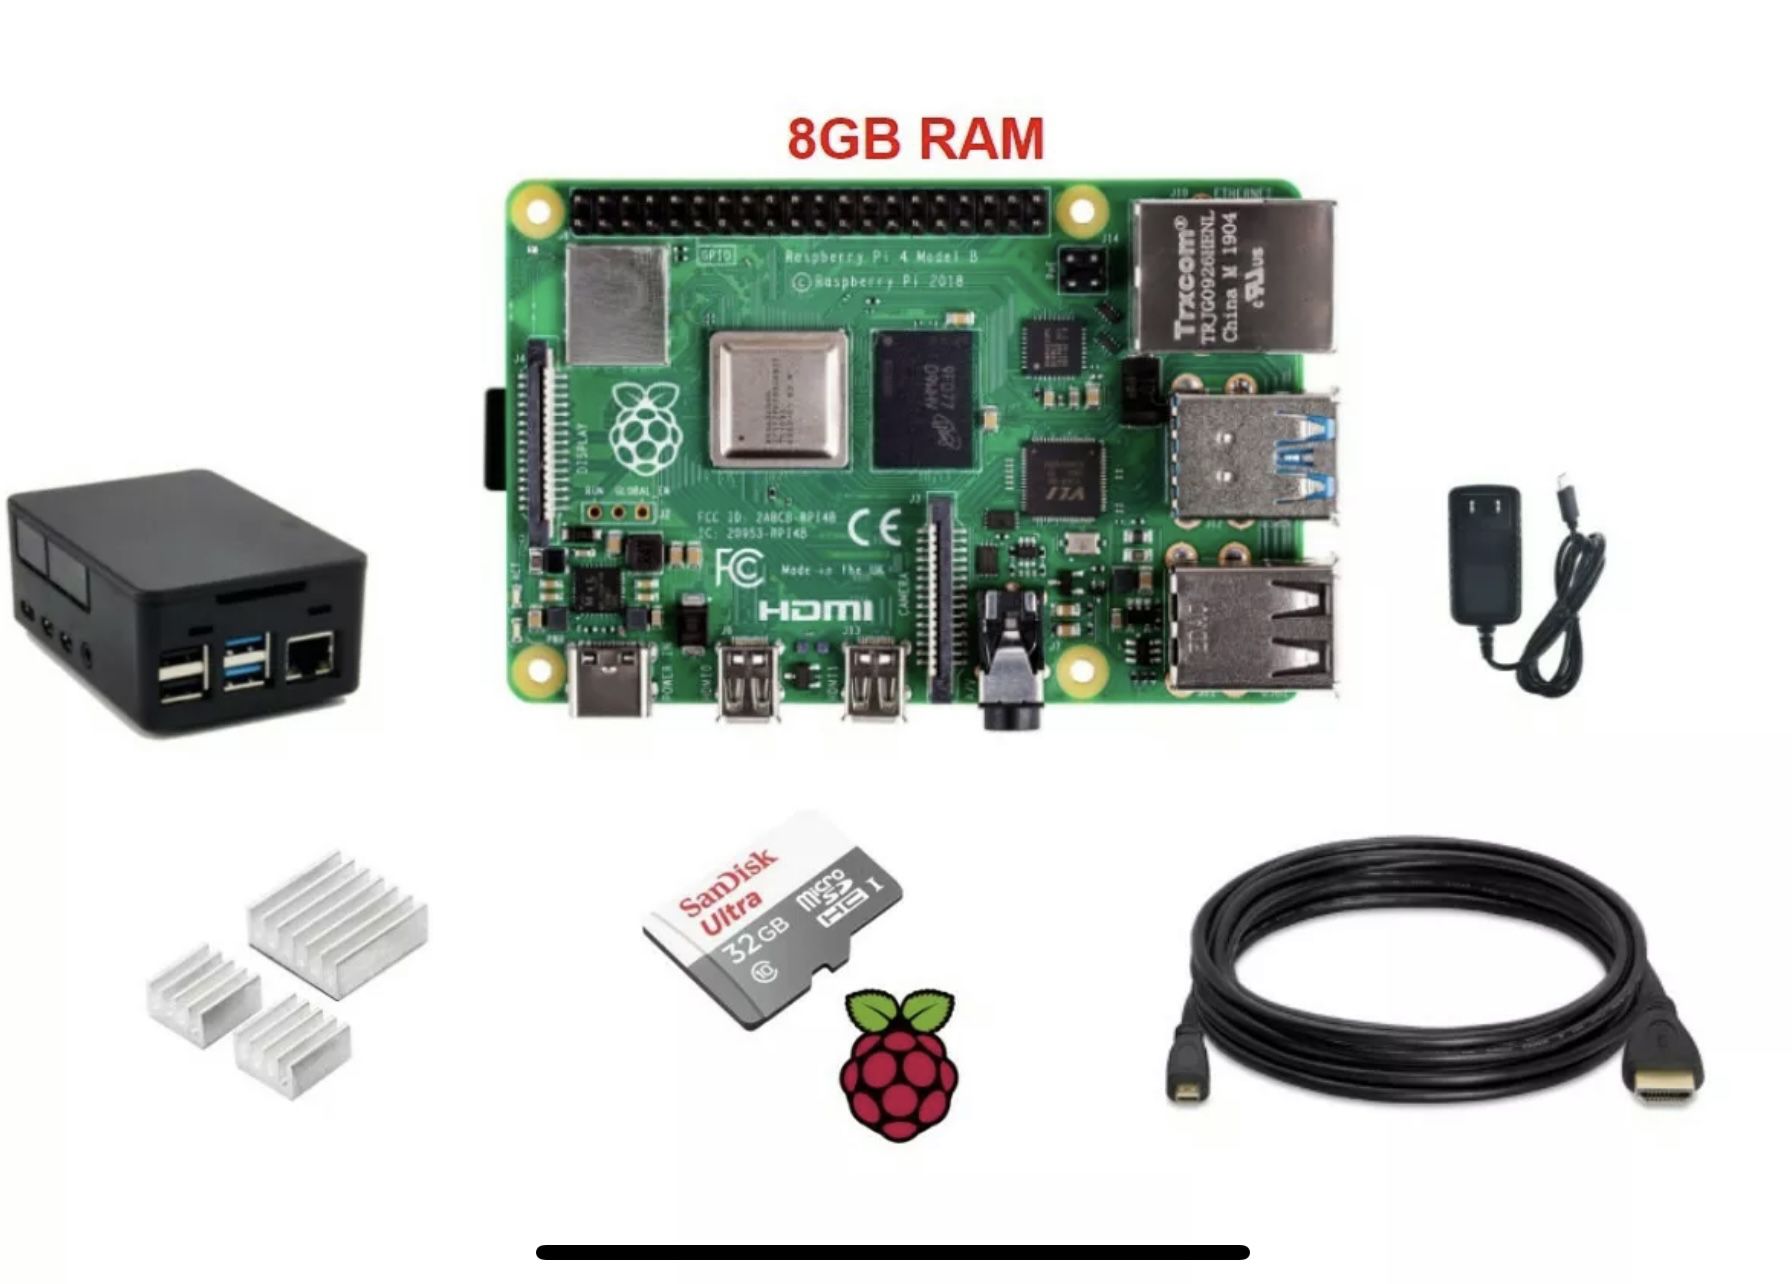 Raspberry Pi 4 Model B 8GB Kit iuu.org.tr